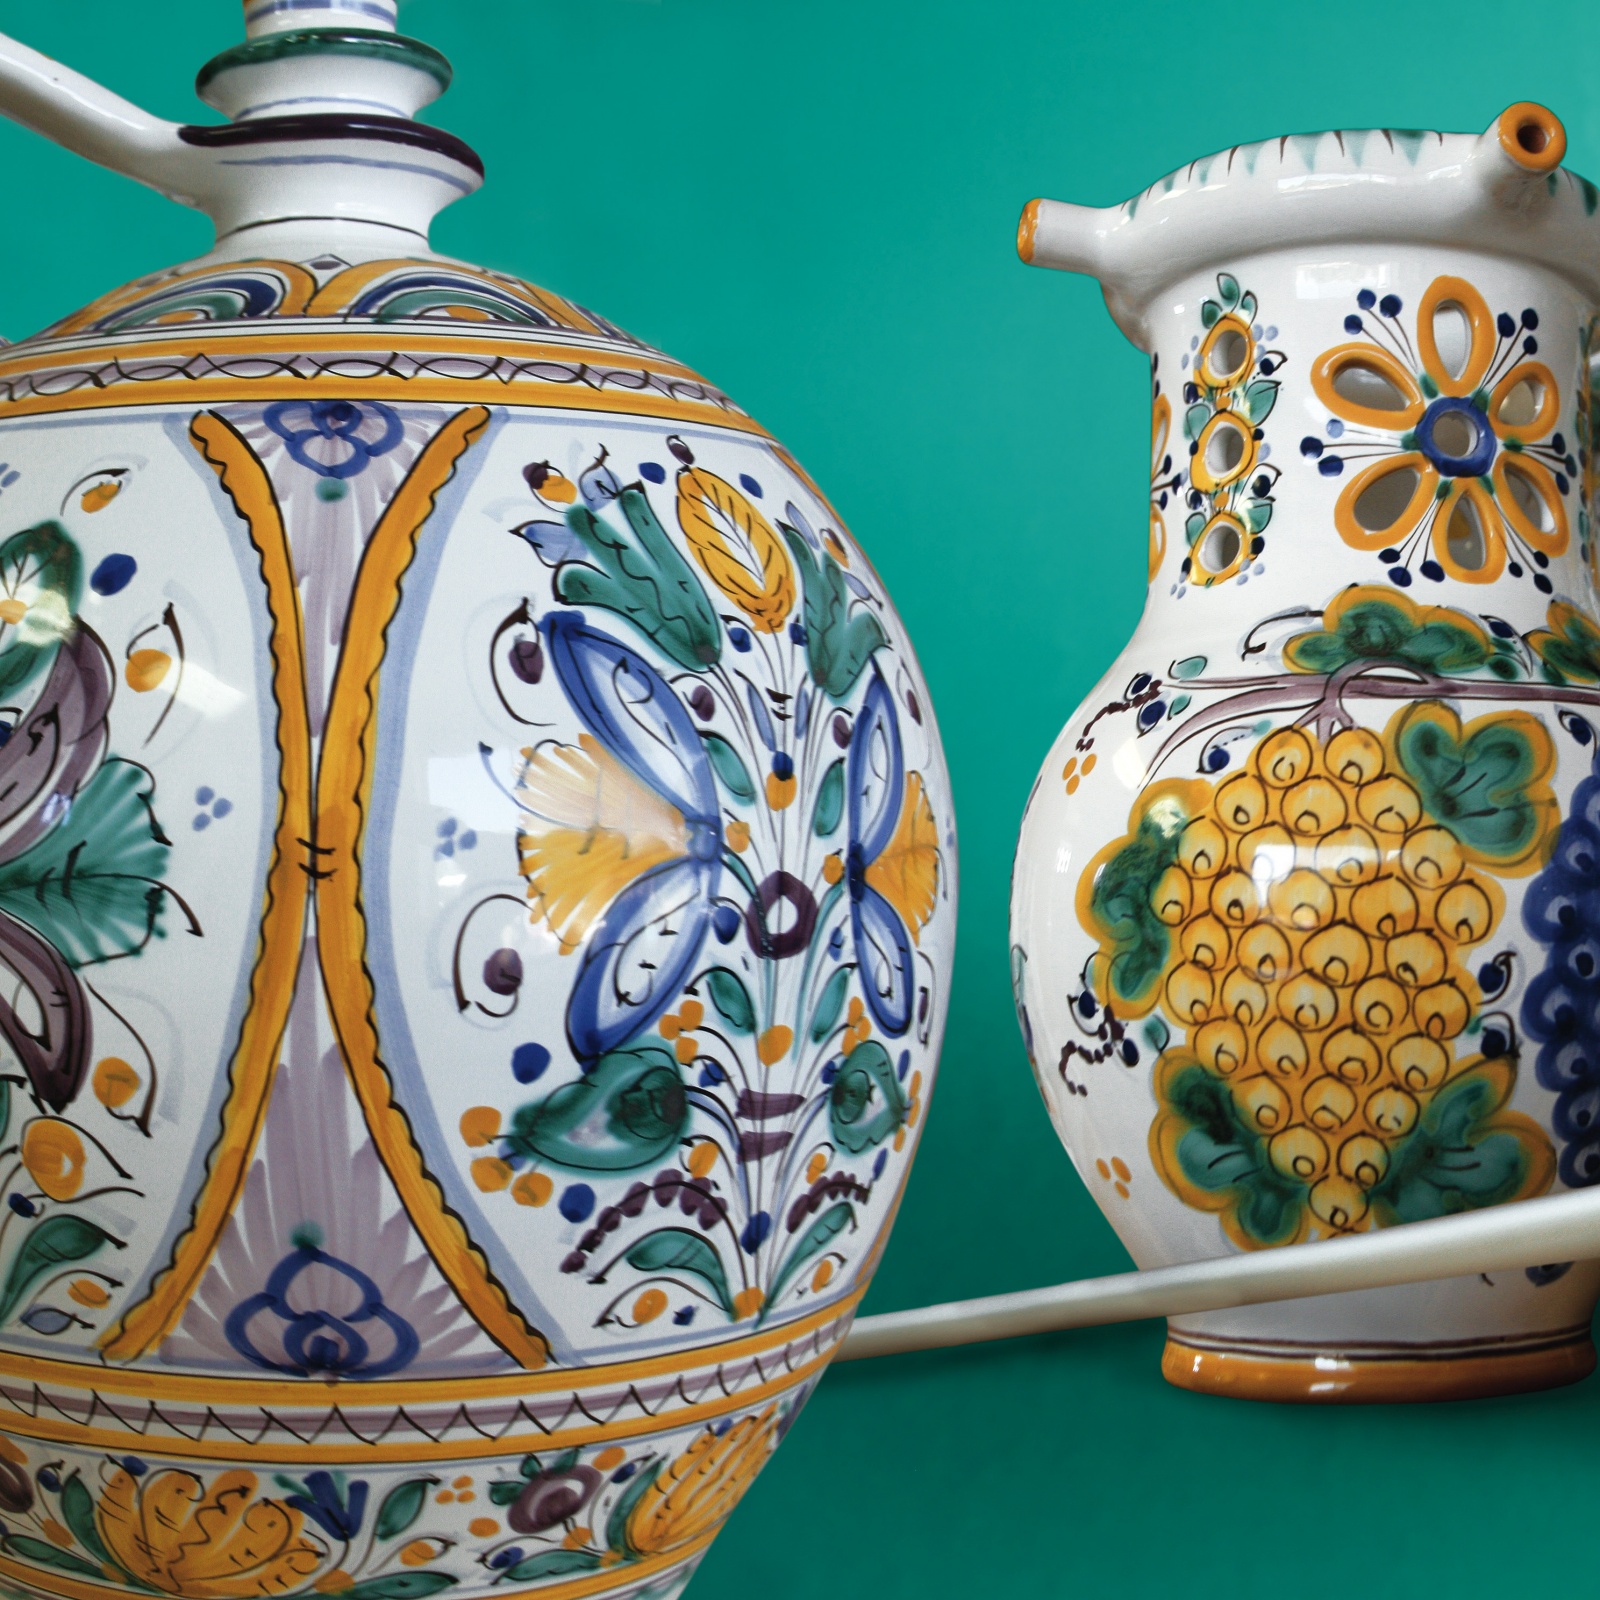 Modranská keramika